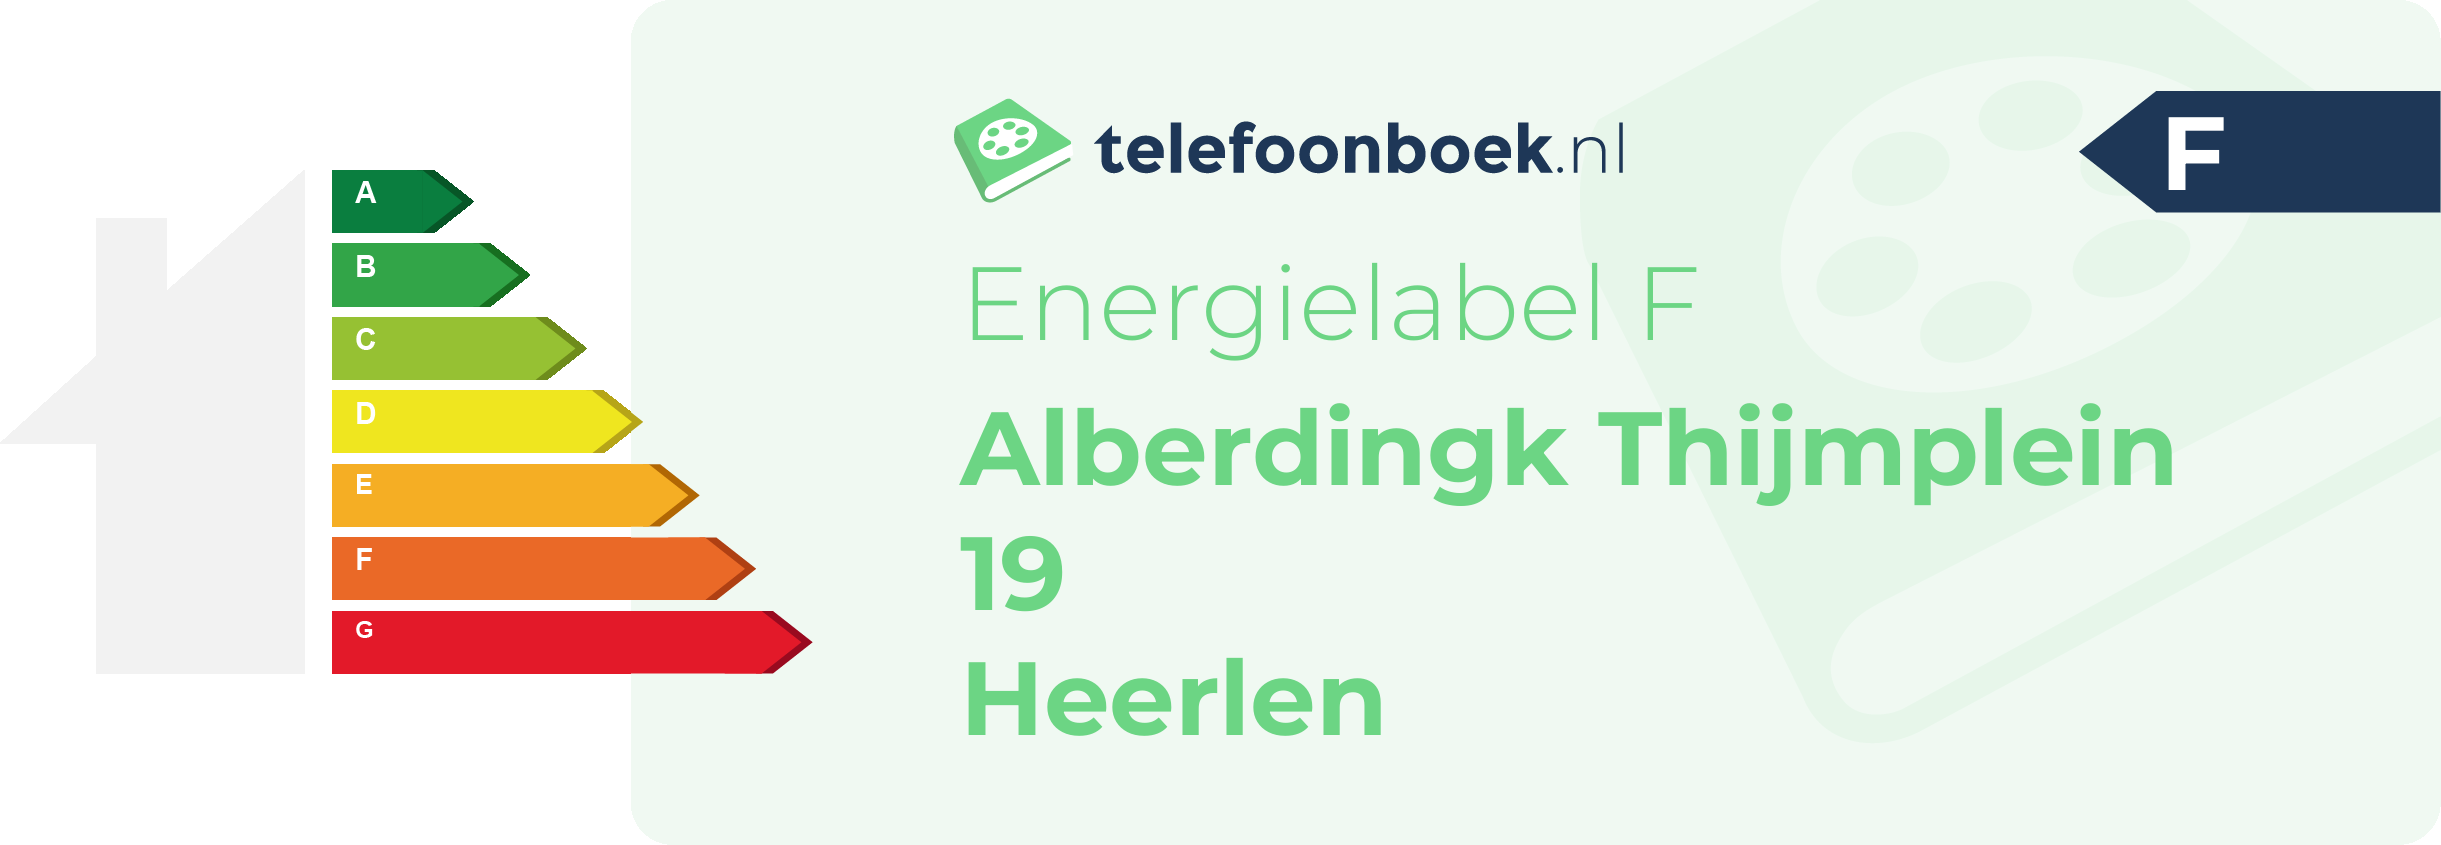 Energielabel Alberdingk Thijmplein 19 Heerlen